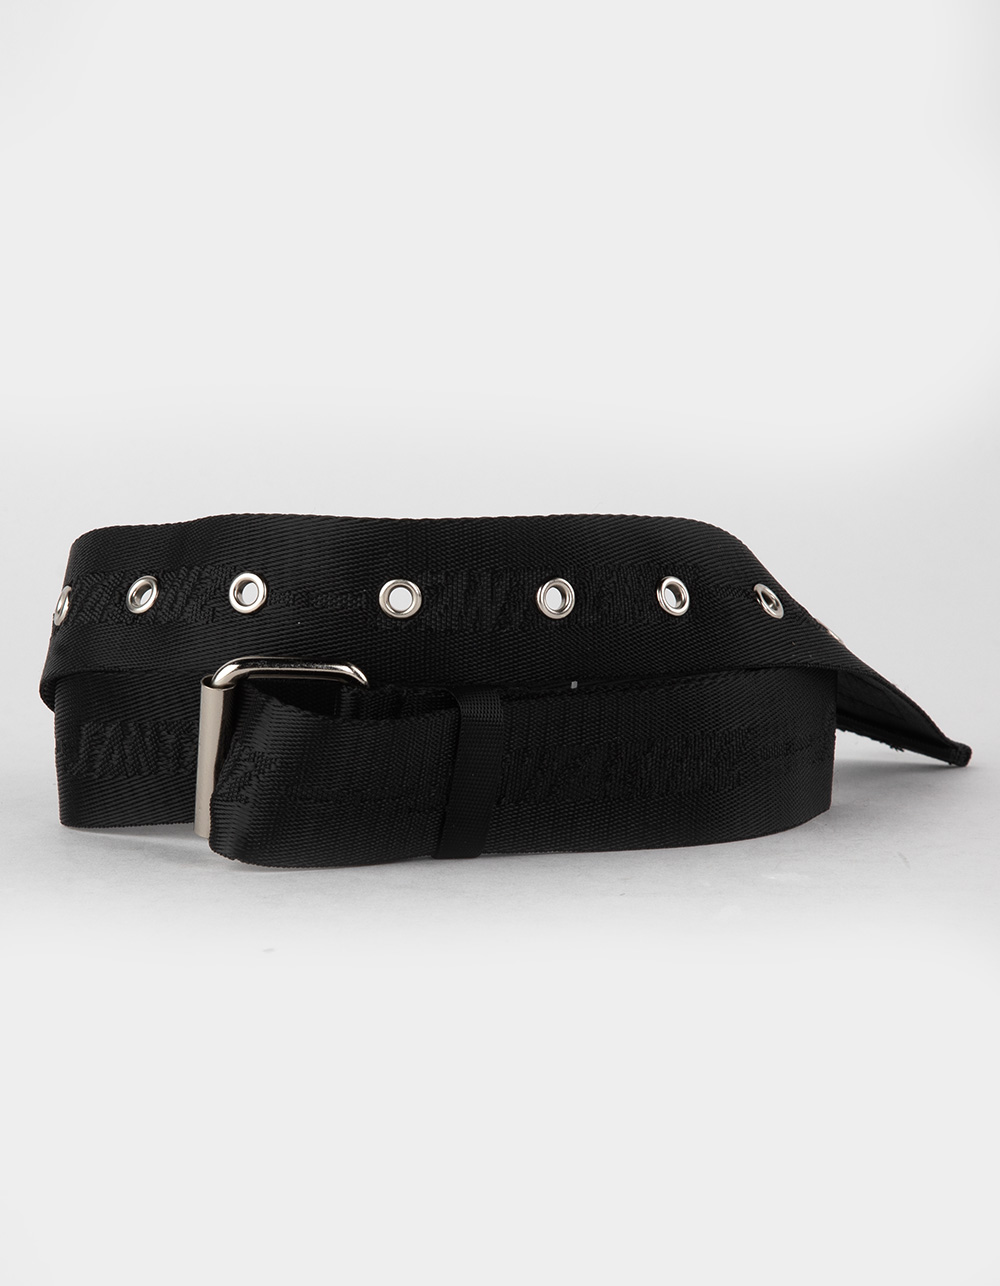 Belts For Men - Buy Belts For Men Online Starting at Just ₹121